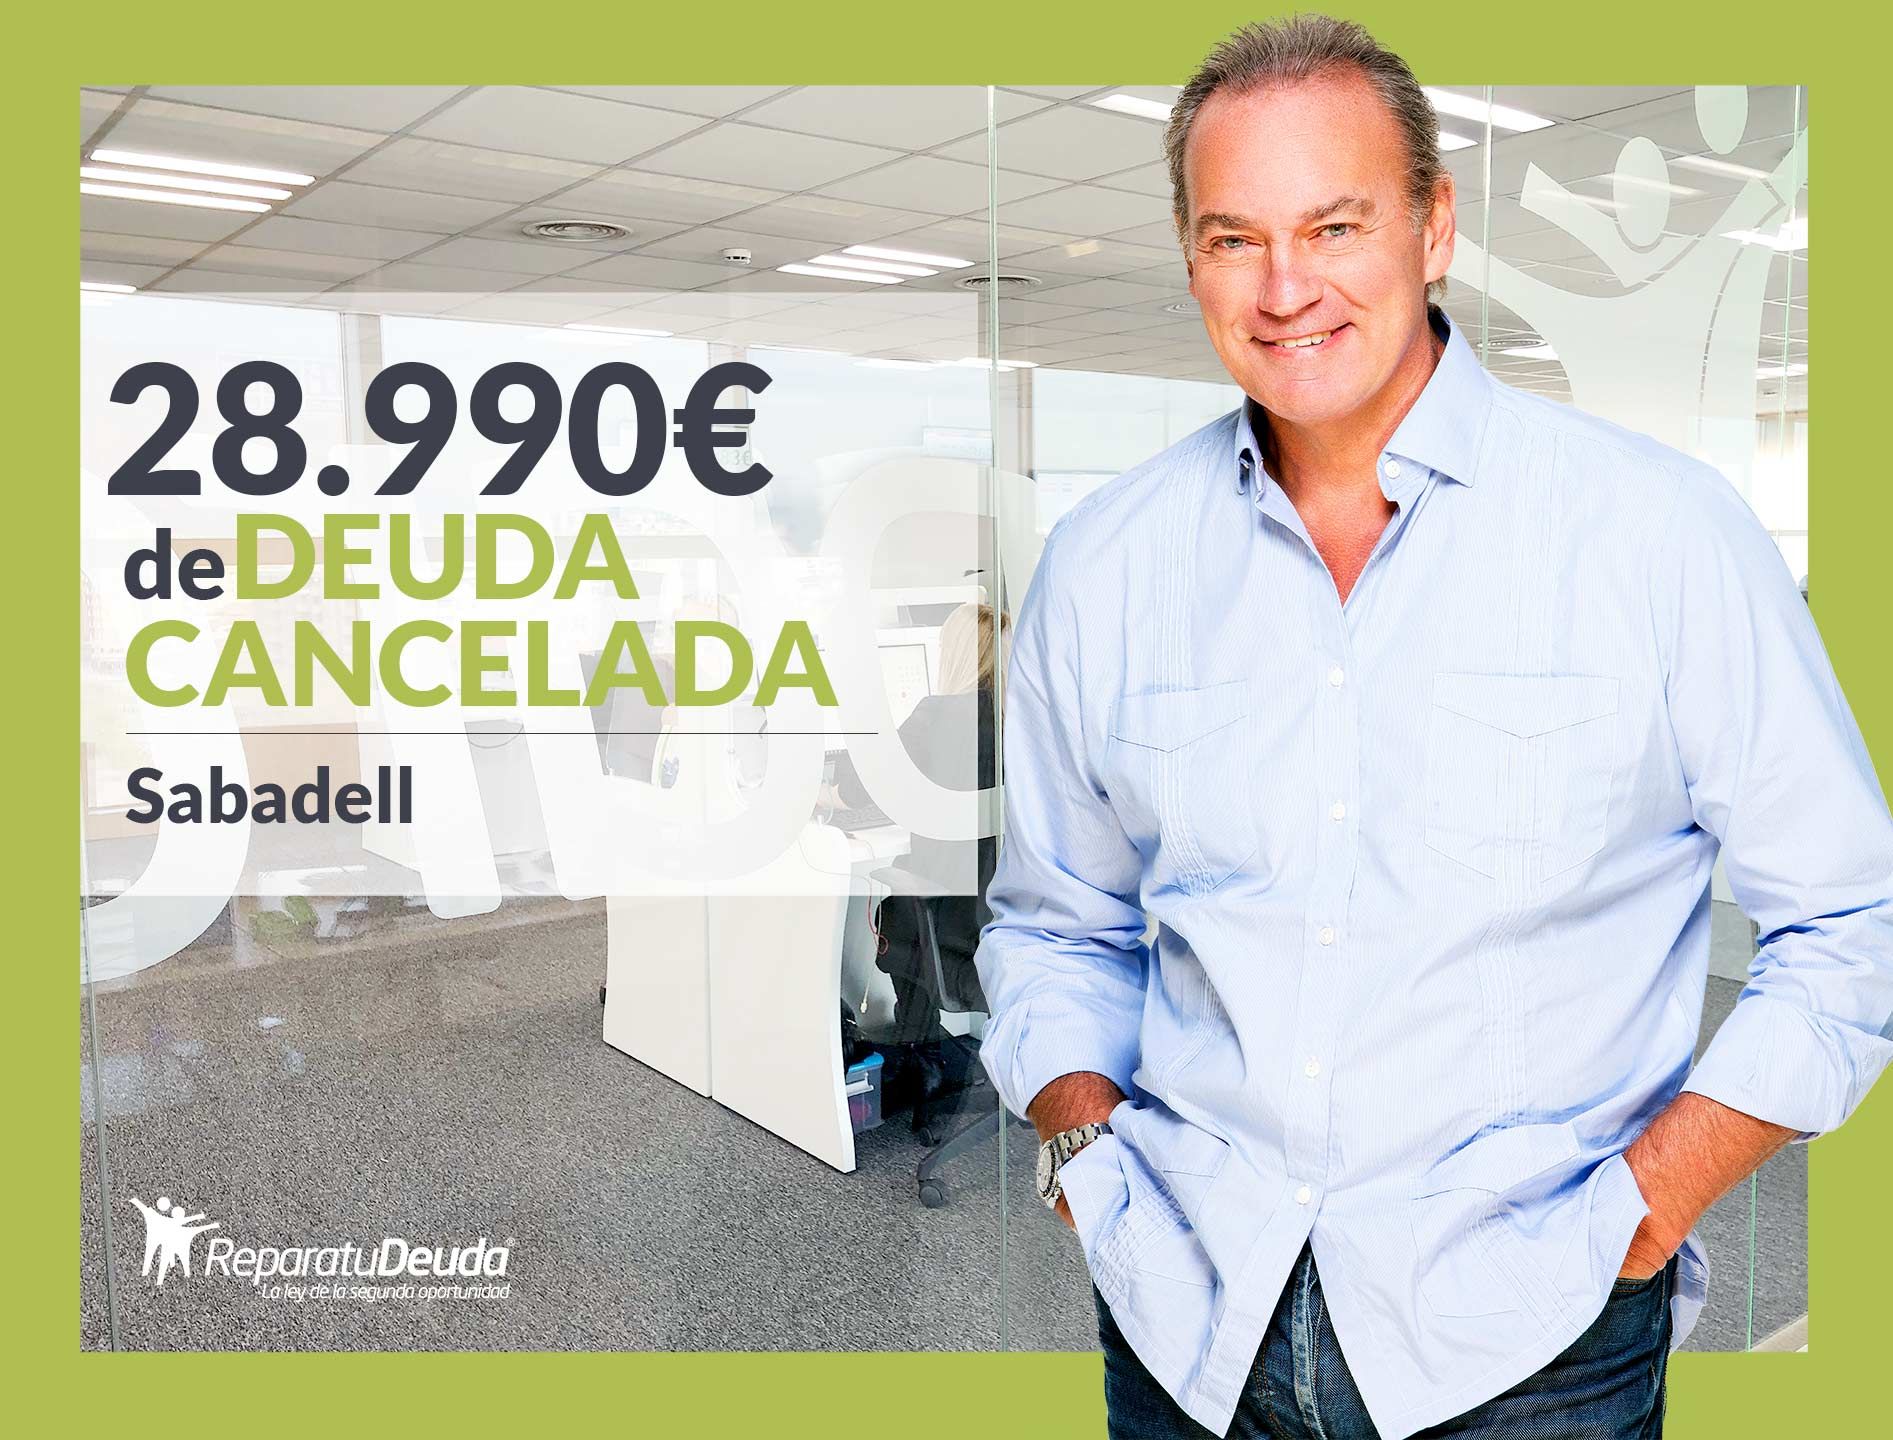 Repara Tu Deuda Abogados Cancela 28.990? En Sabadell (Barcelona) Gracias A La Ley De Segunda Oportunidad